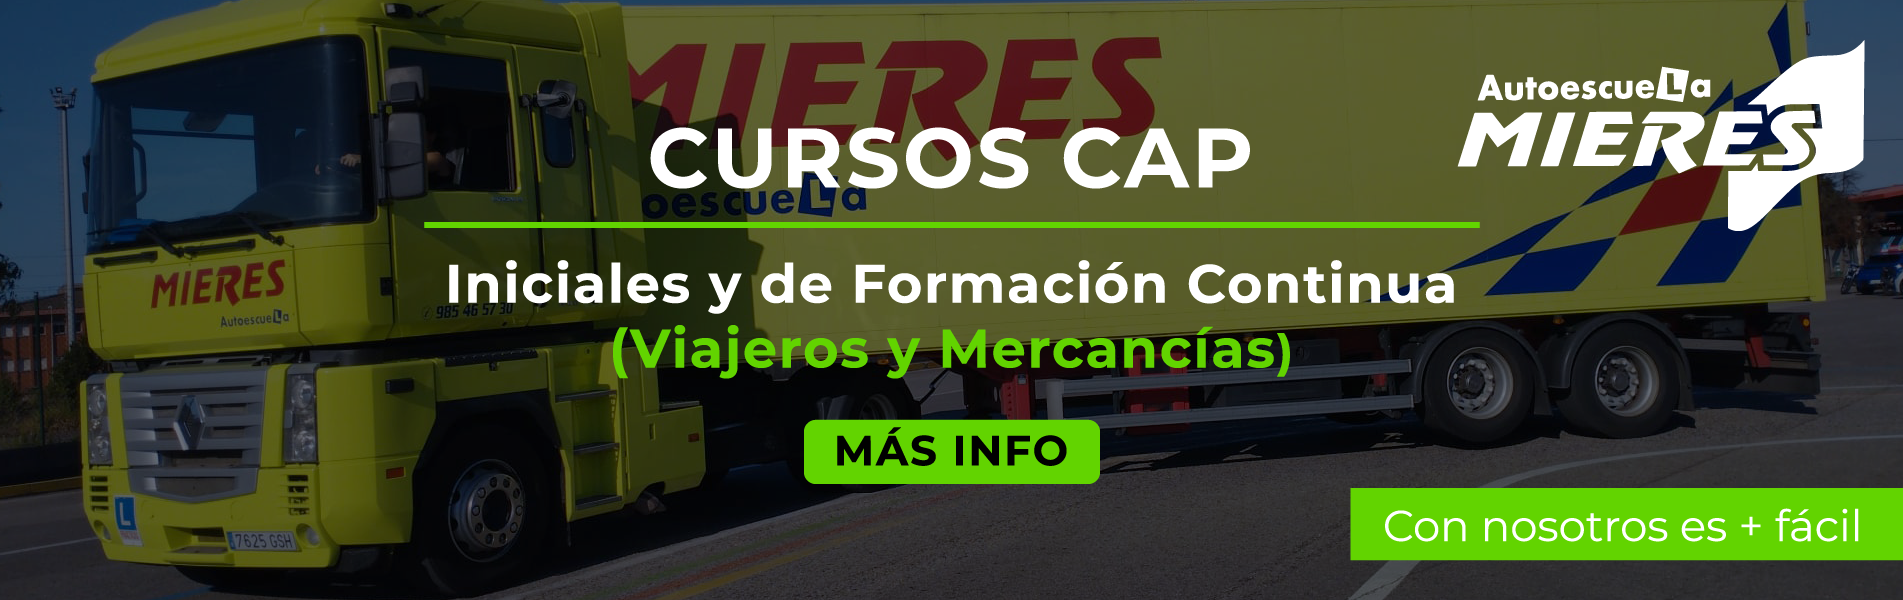 Cursos CAP Inicial y Ampliación de Mercancías y Viajeros en Autoescuela Mieres